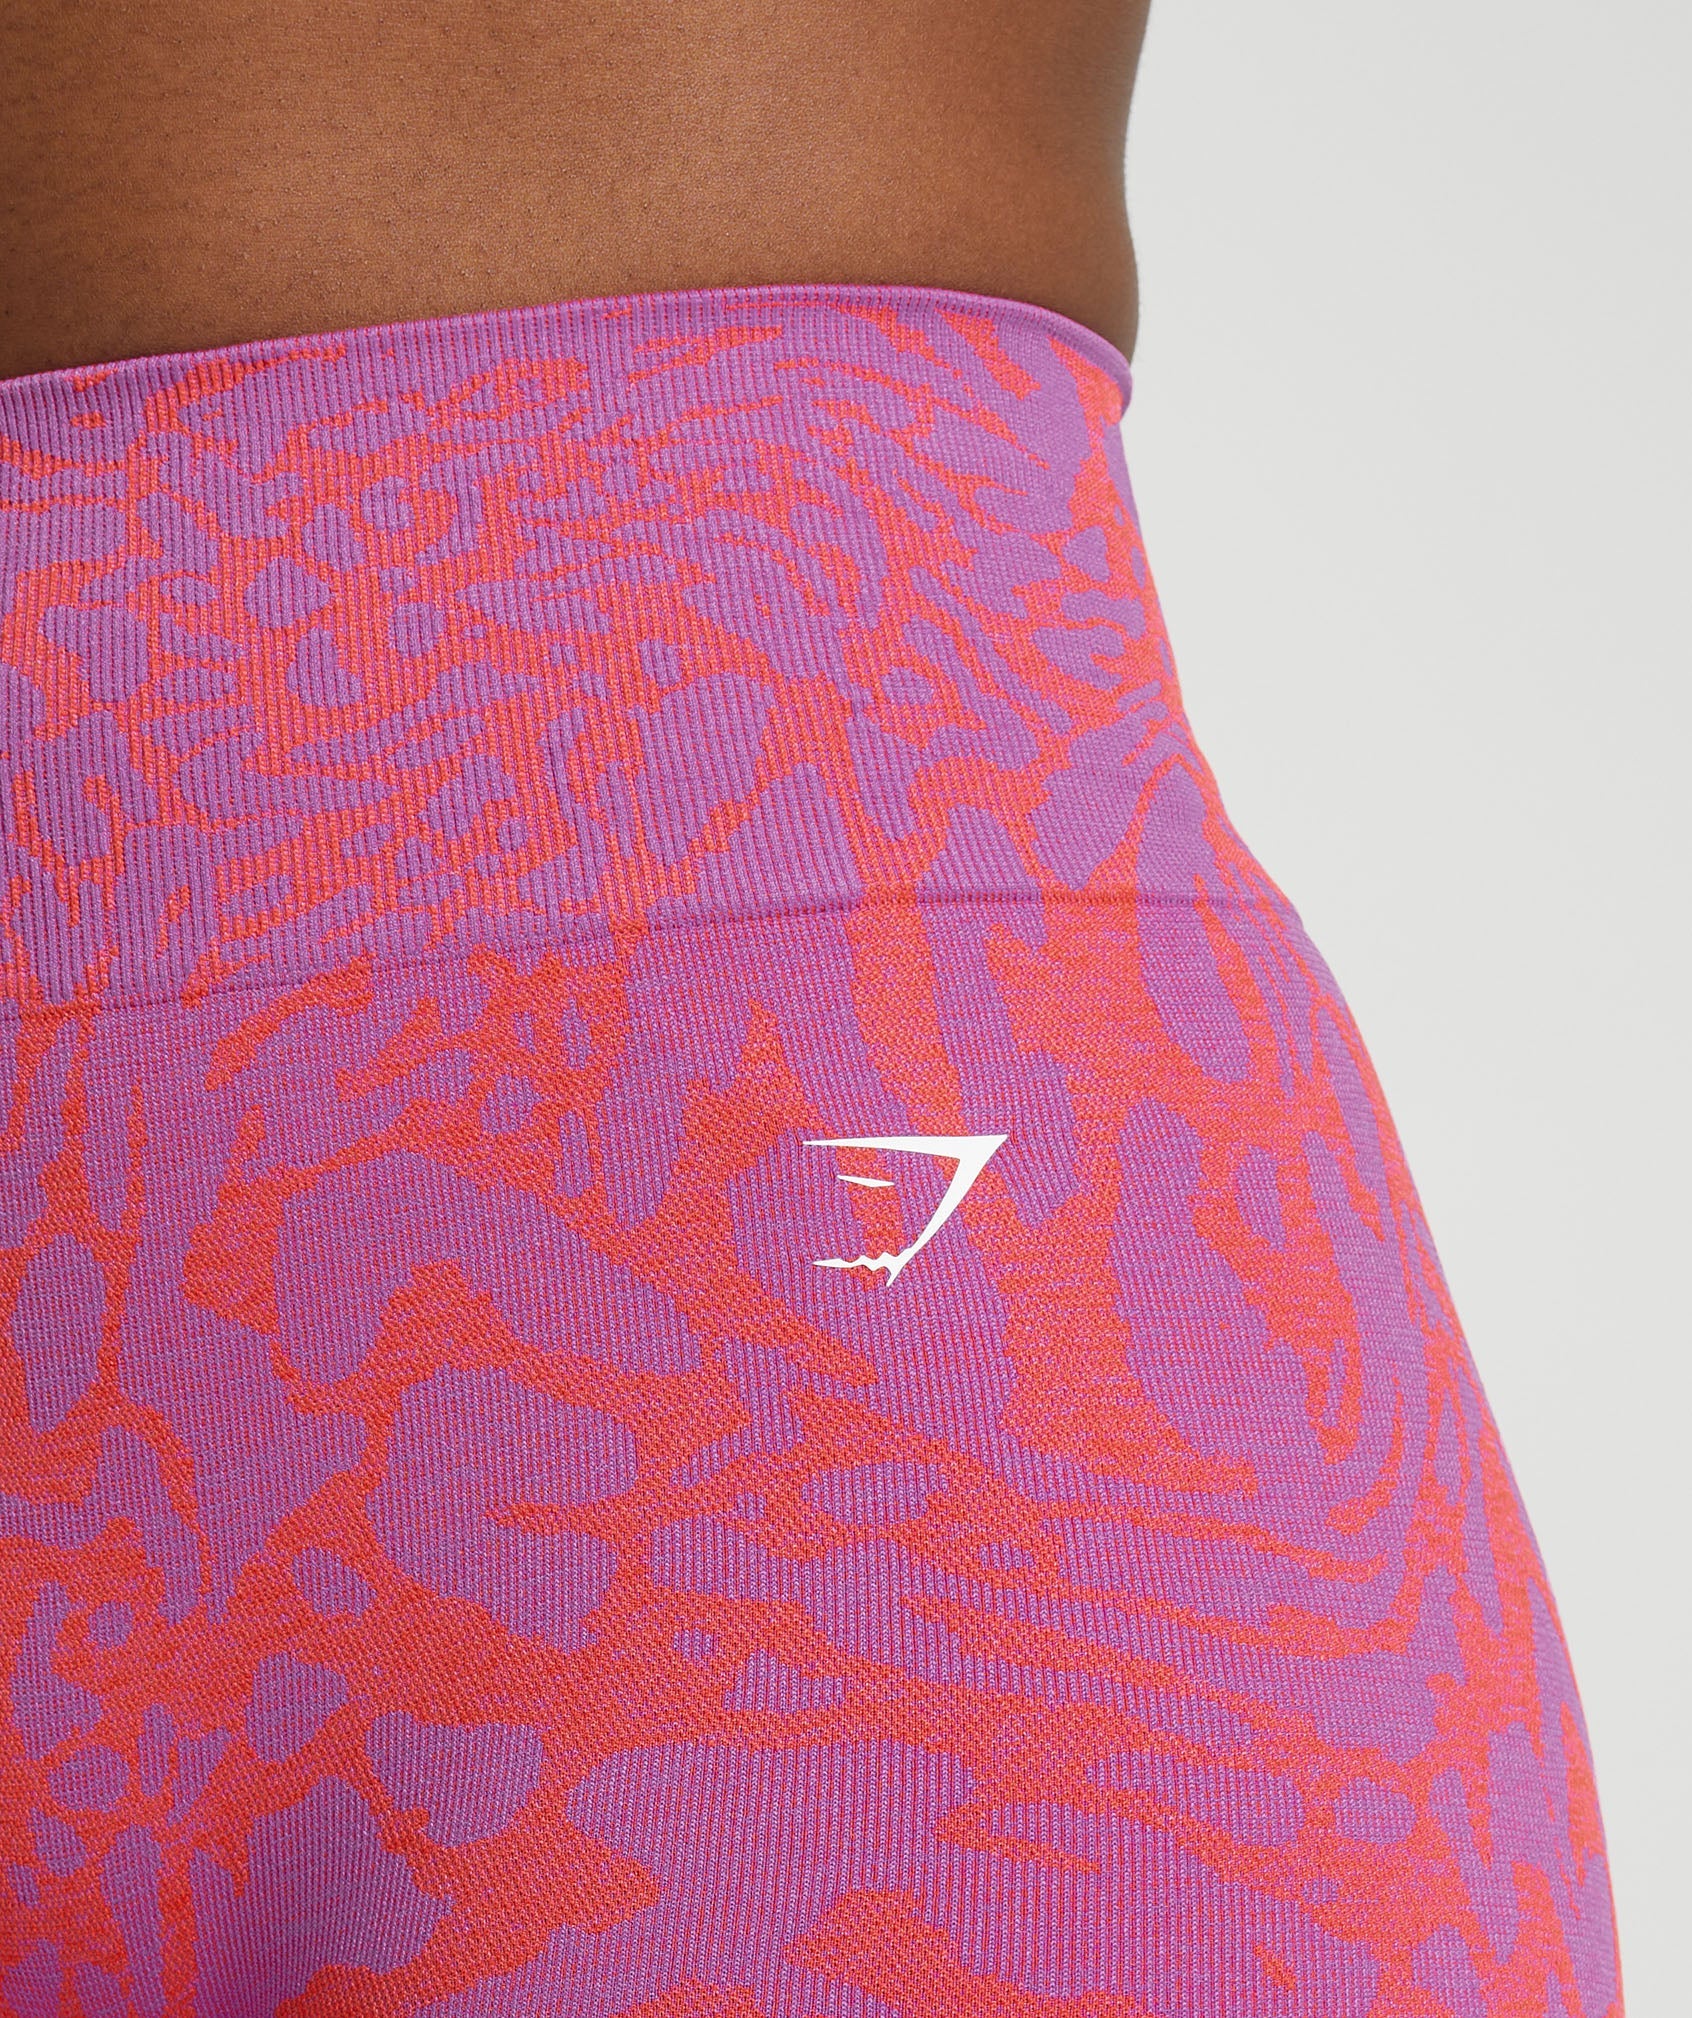 Gymshark Adapt Safari Tight Shorts - Shelly Pink/Fly Coral